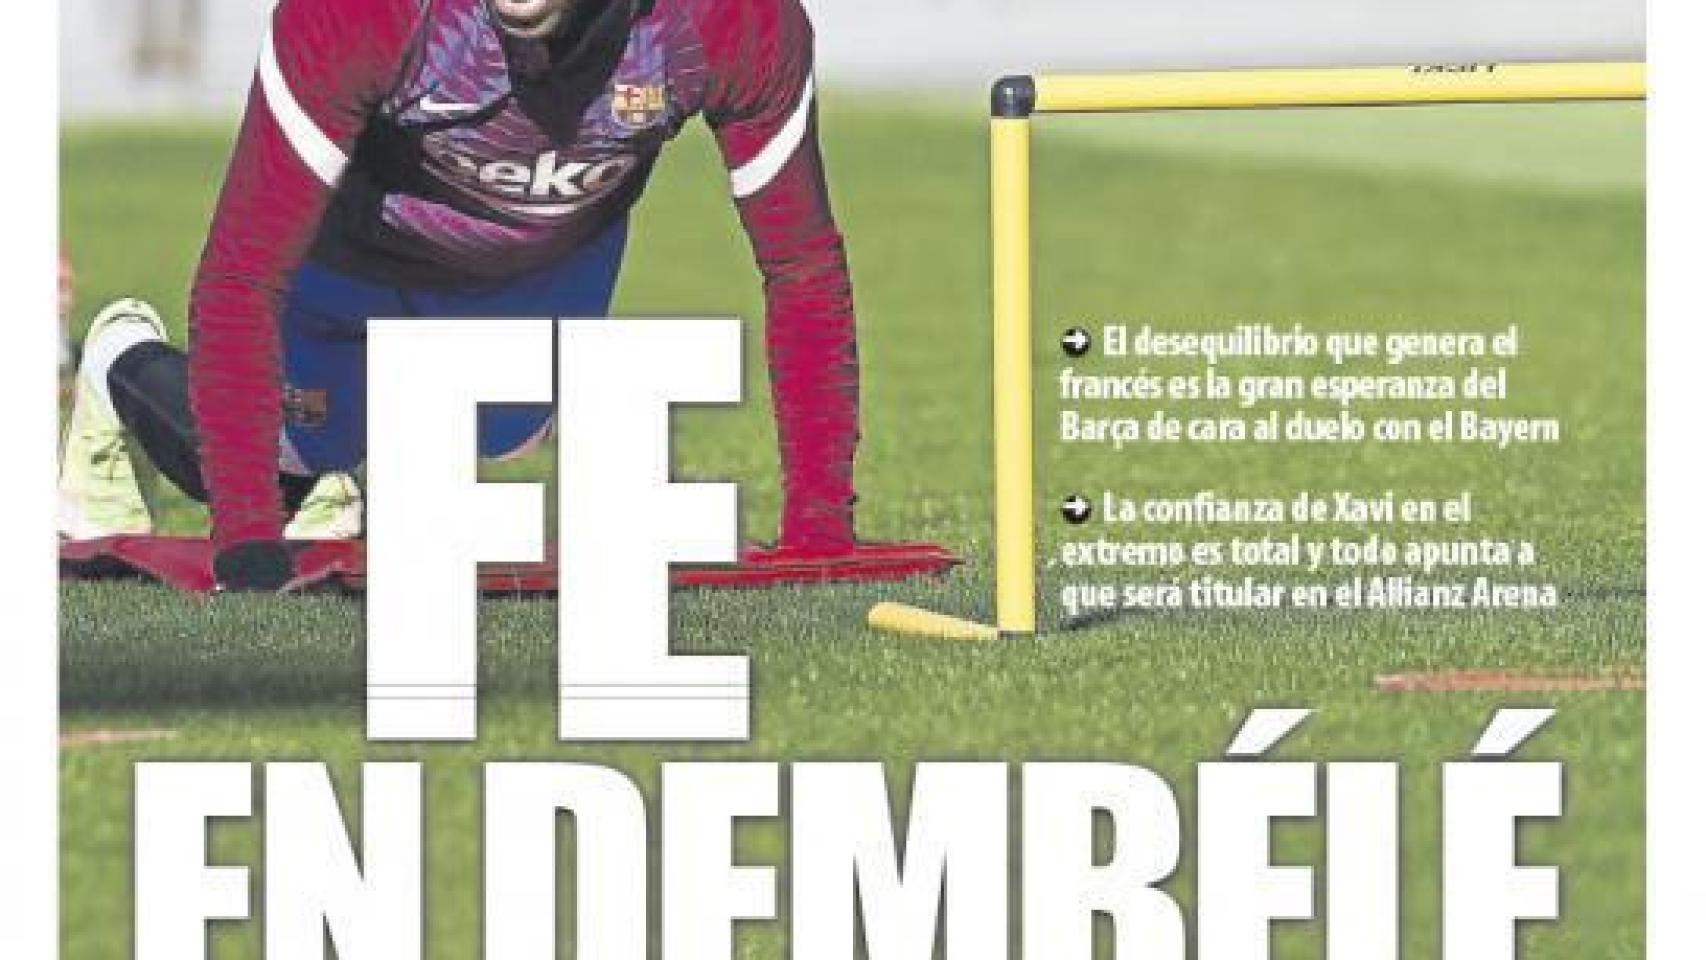 La portada del diario Mundo Deportivo (06/12/2021)